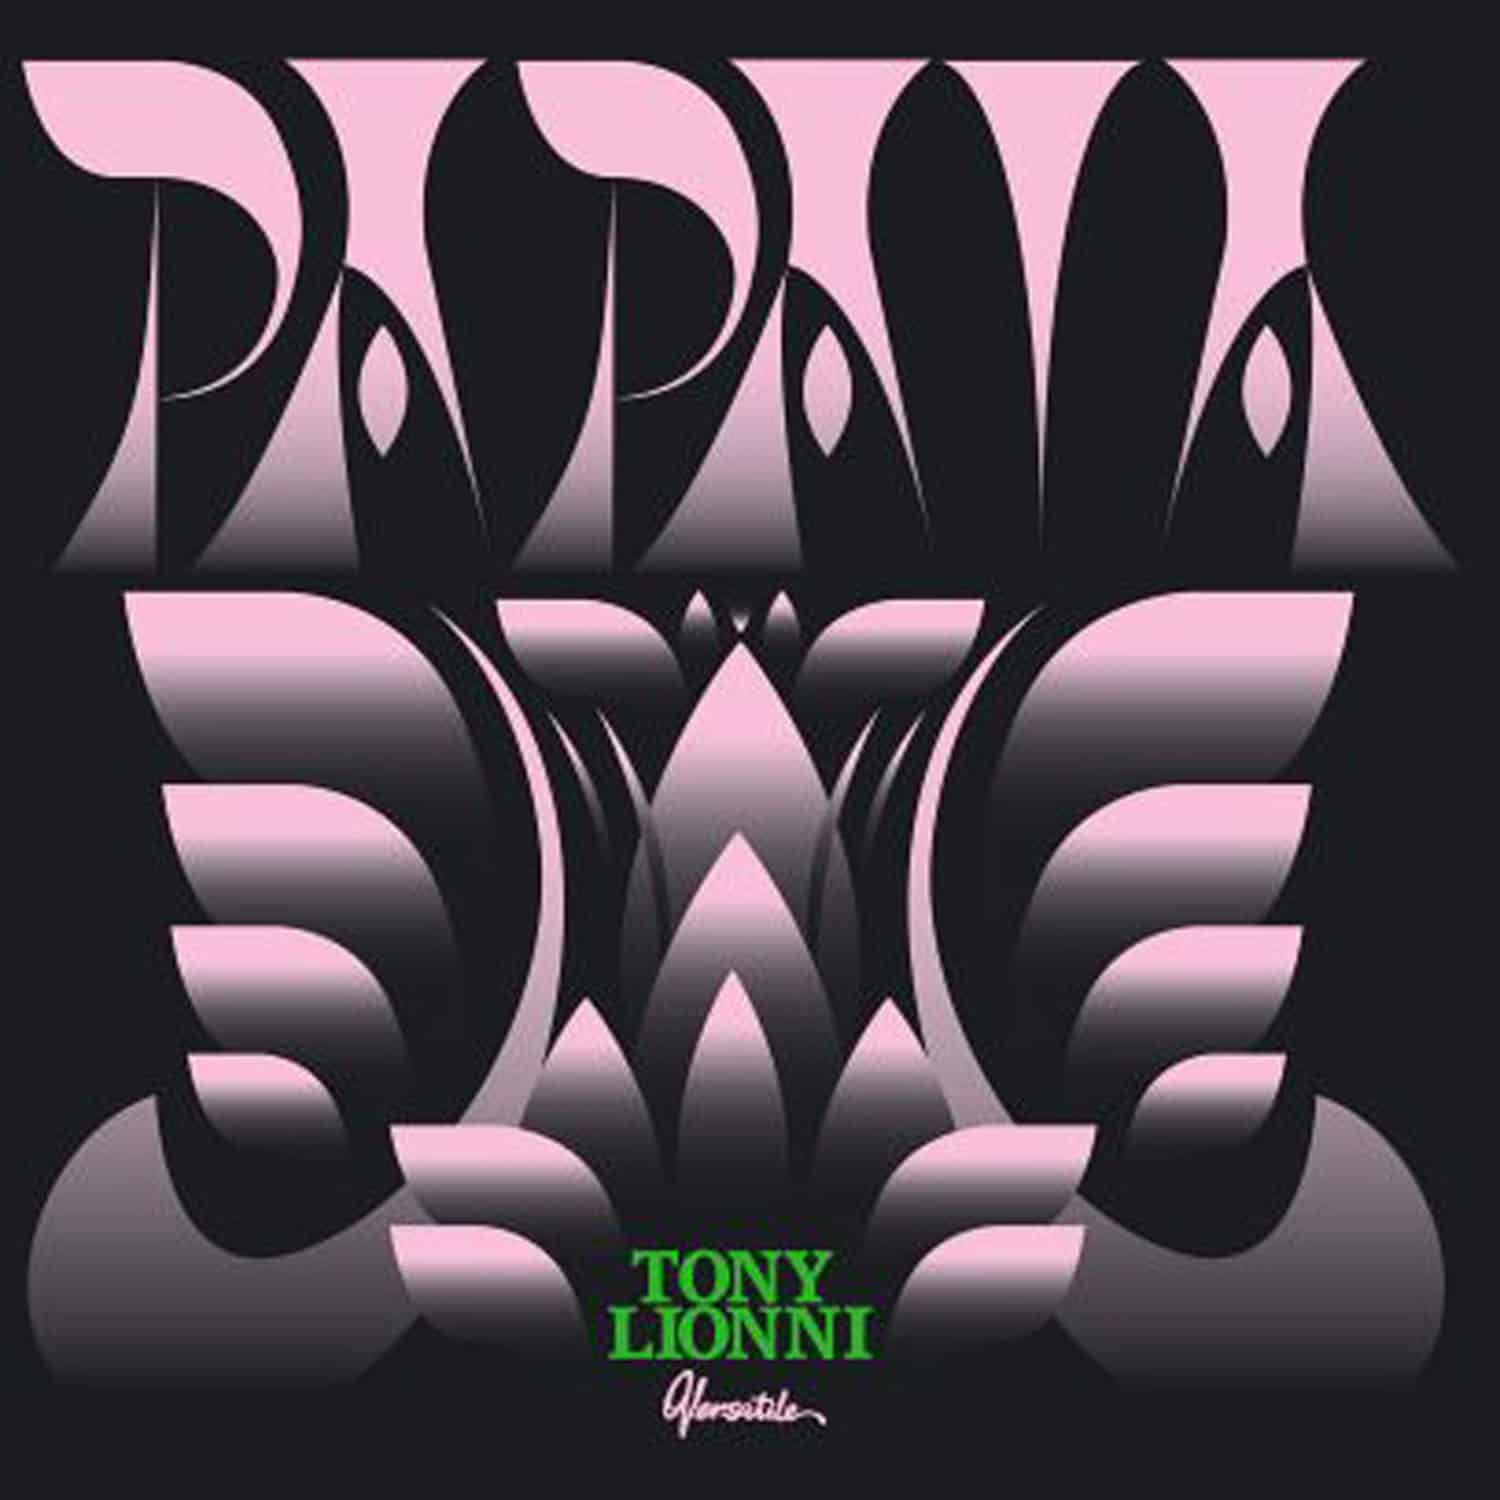 Tony Lionni - PAPAIA EP